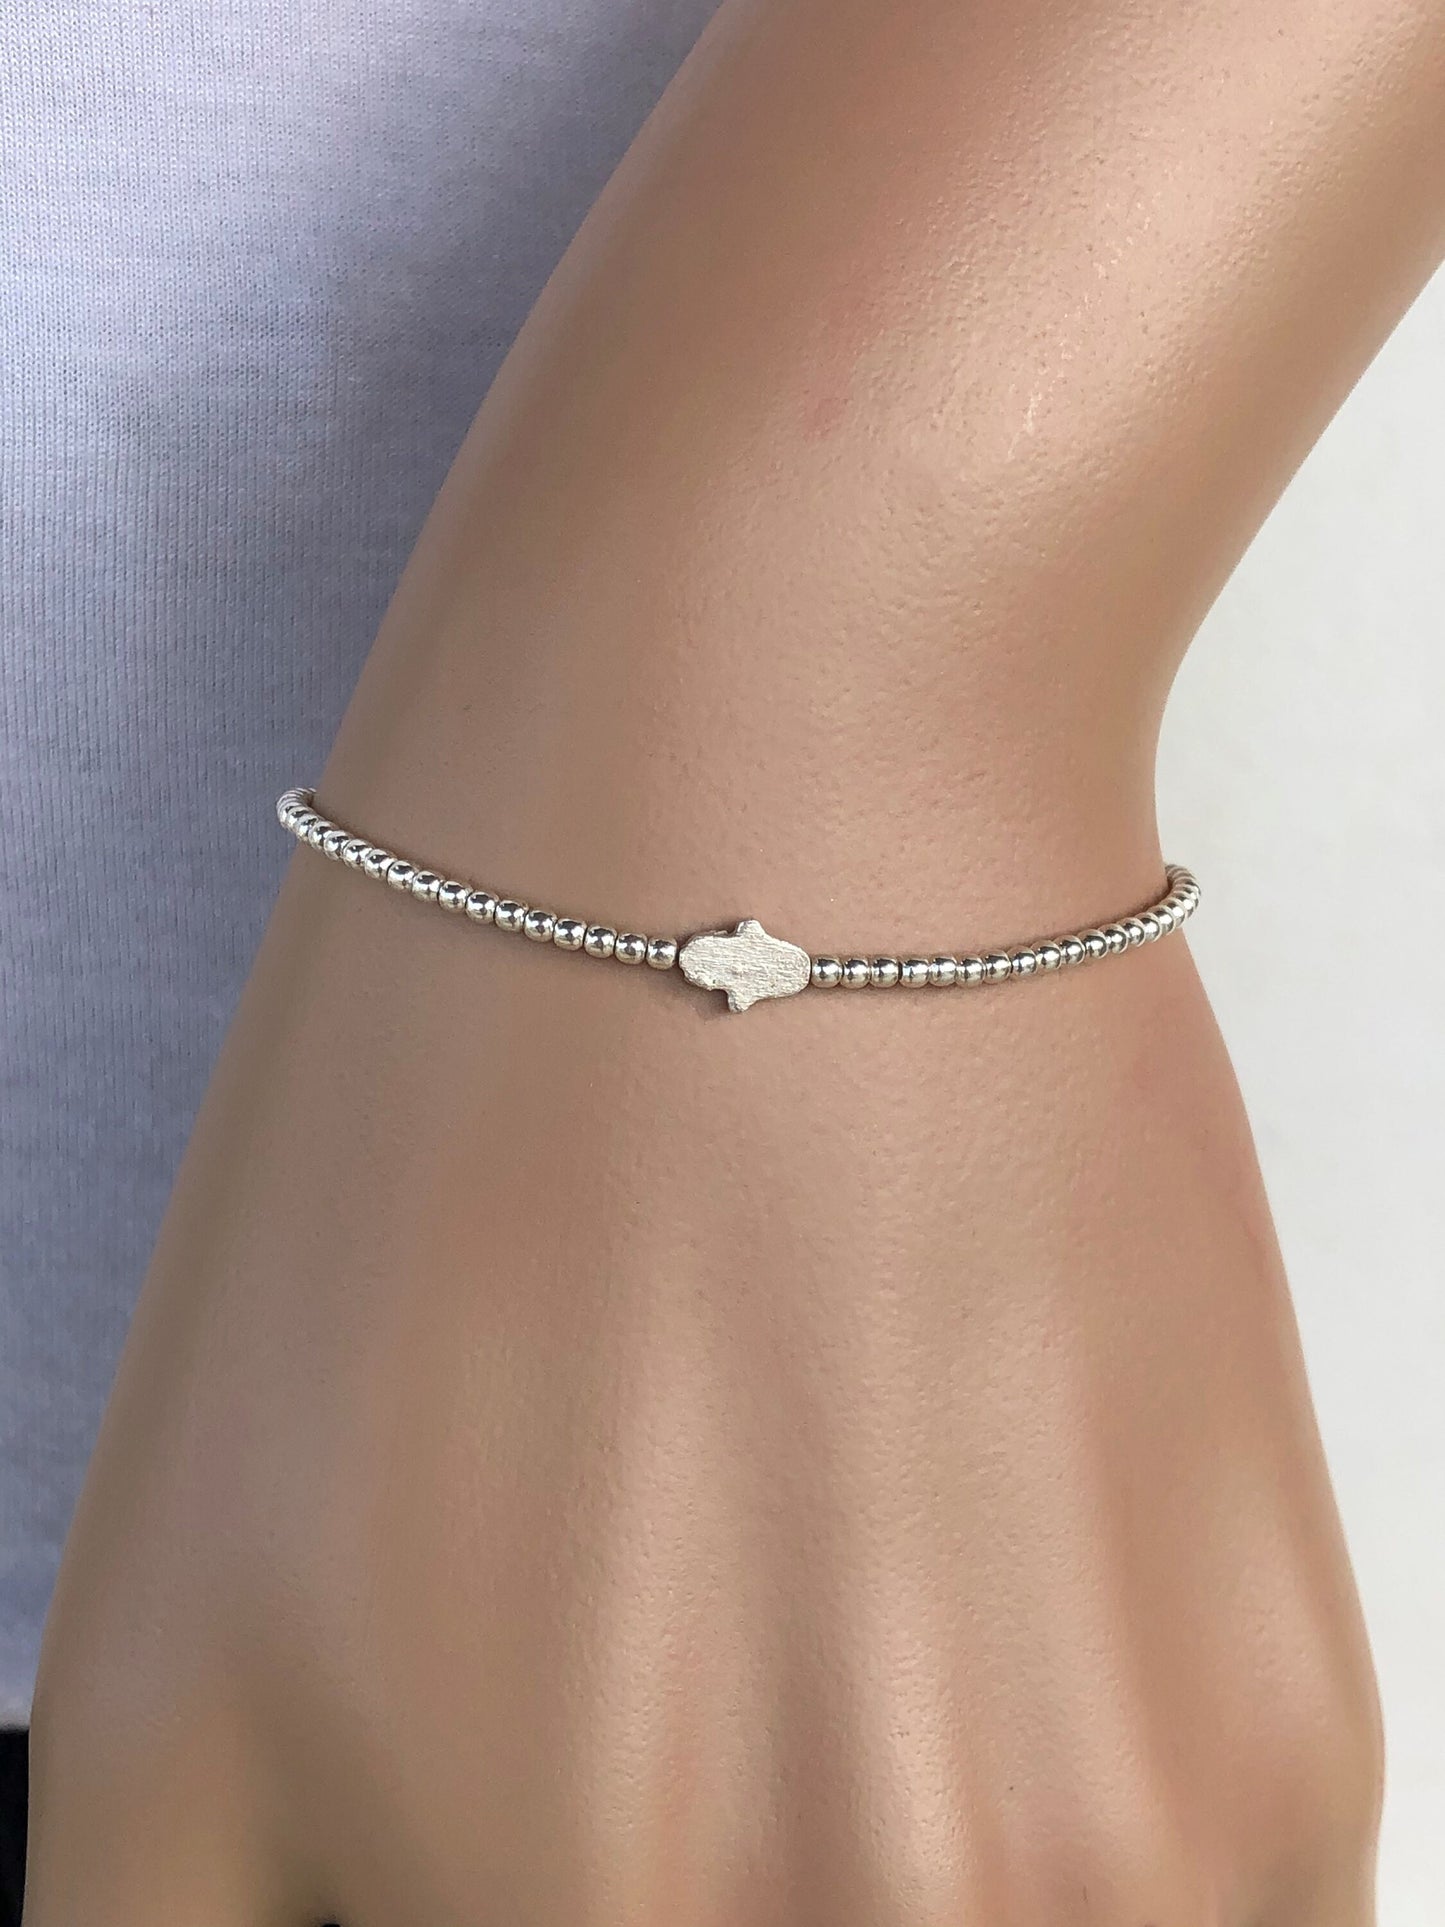 Dainty hamsa hand  bracelet, Sterling silver bracelet, protection jewelry